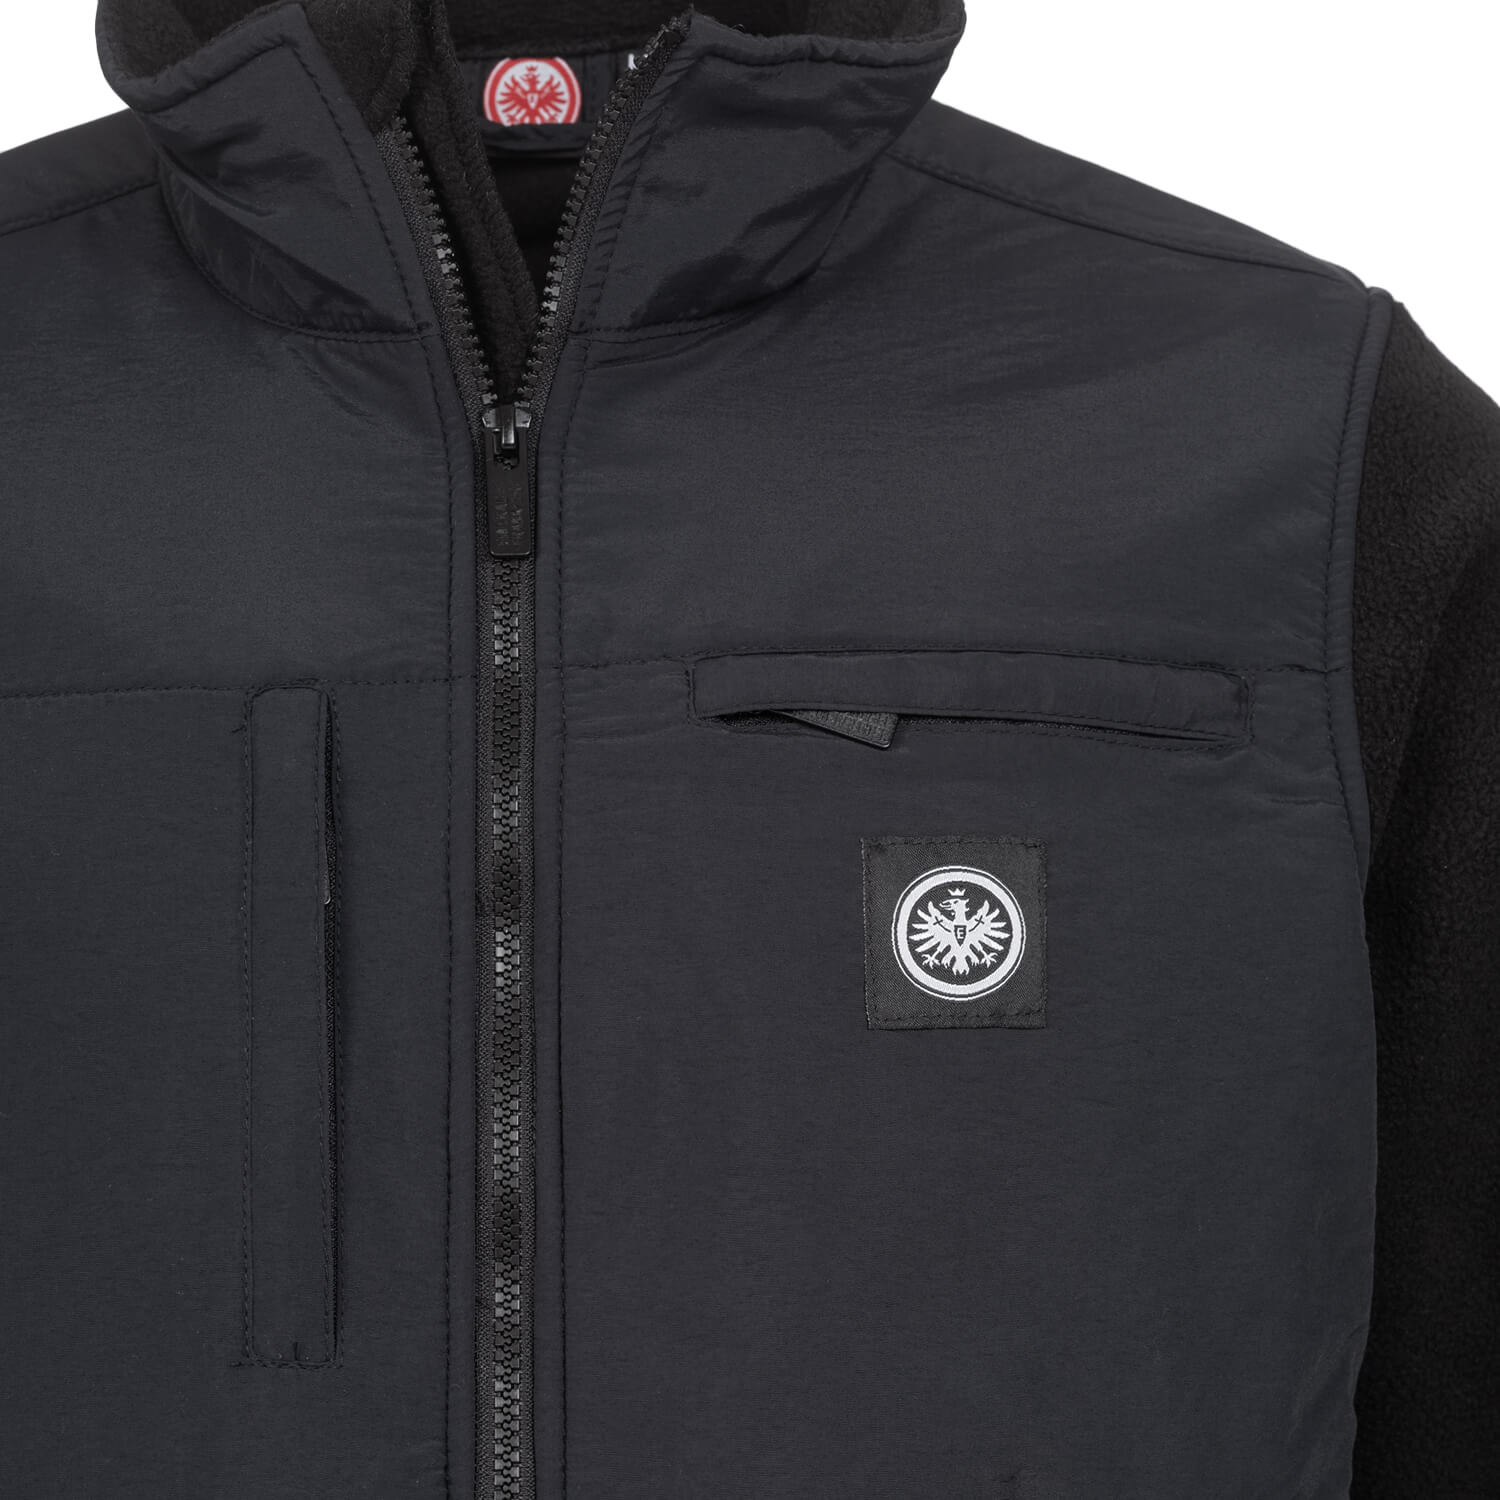 Bild 5: Premium Fleece Jacket